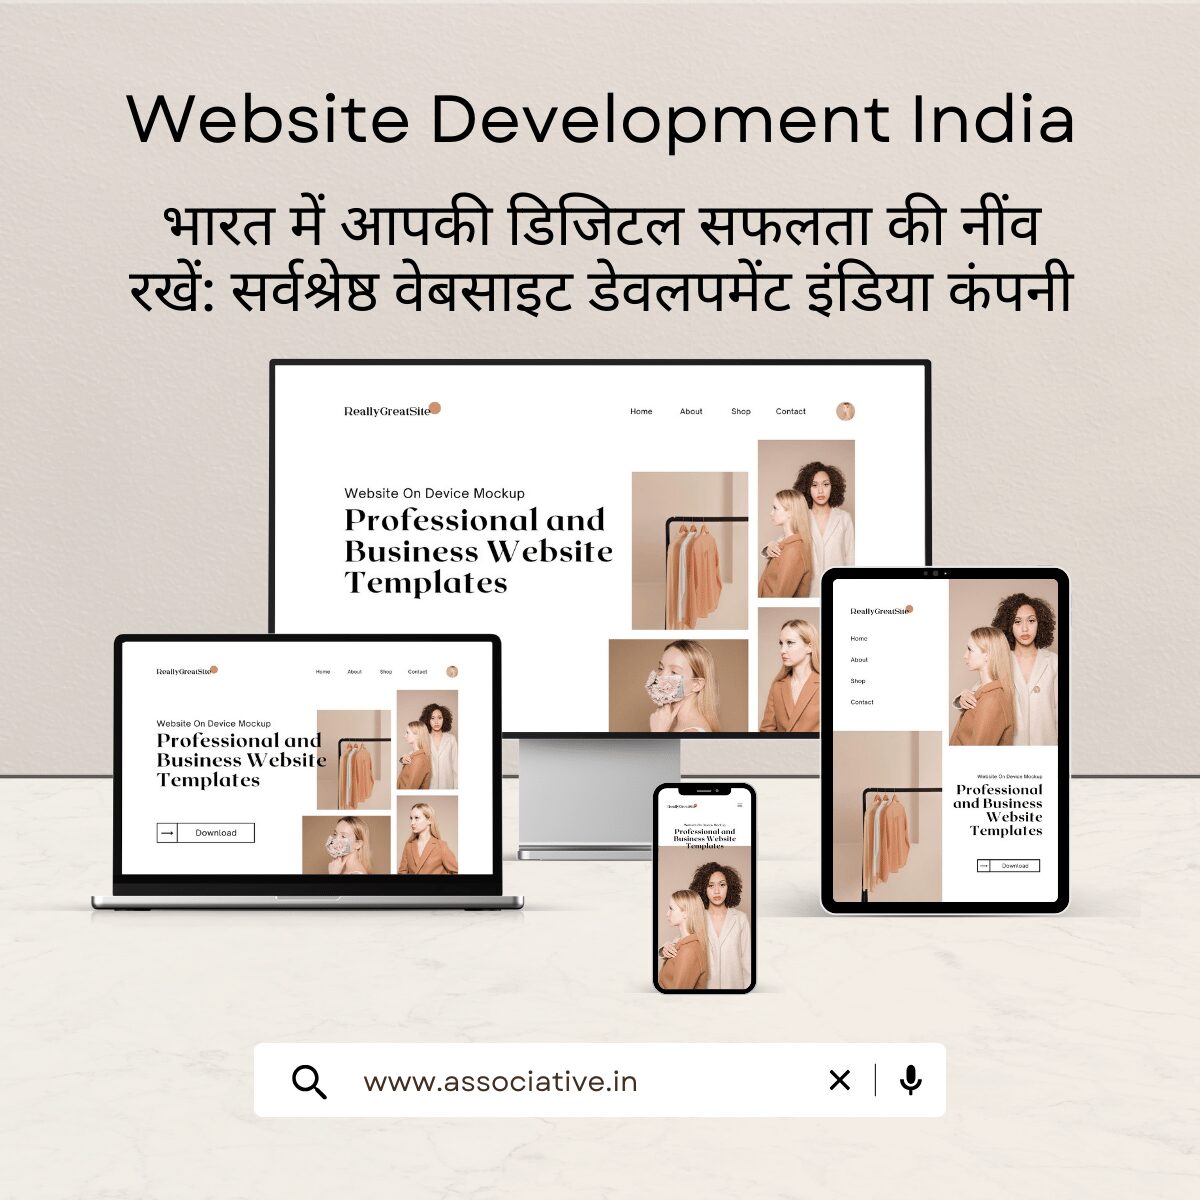 Website Development India भारत में आपकी डिजिटल सफलता की नींव रखें: सर्वश्रेष्ठ वेबसाइट डेवलपमेंट इंडिया कंपनी